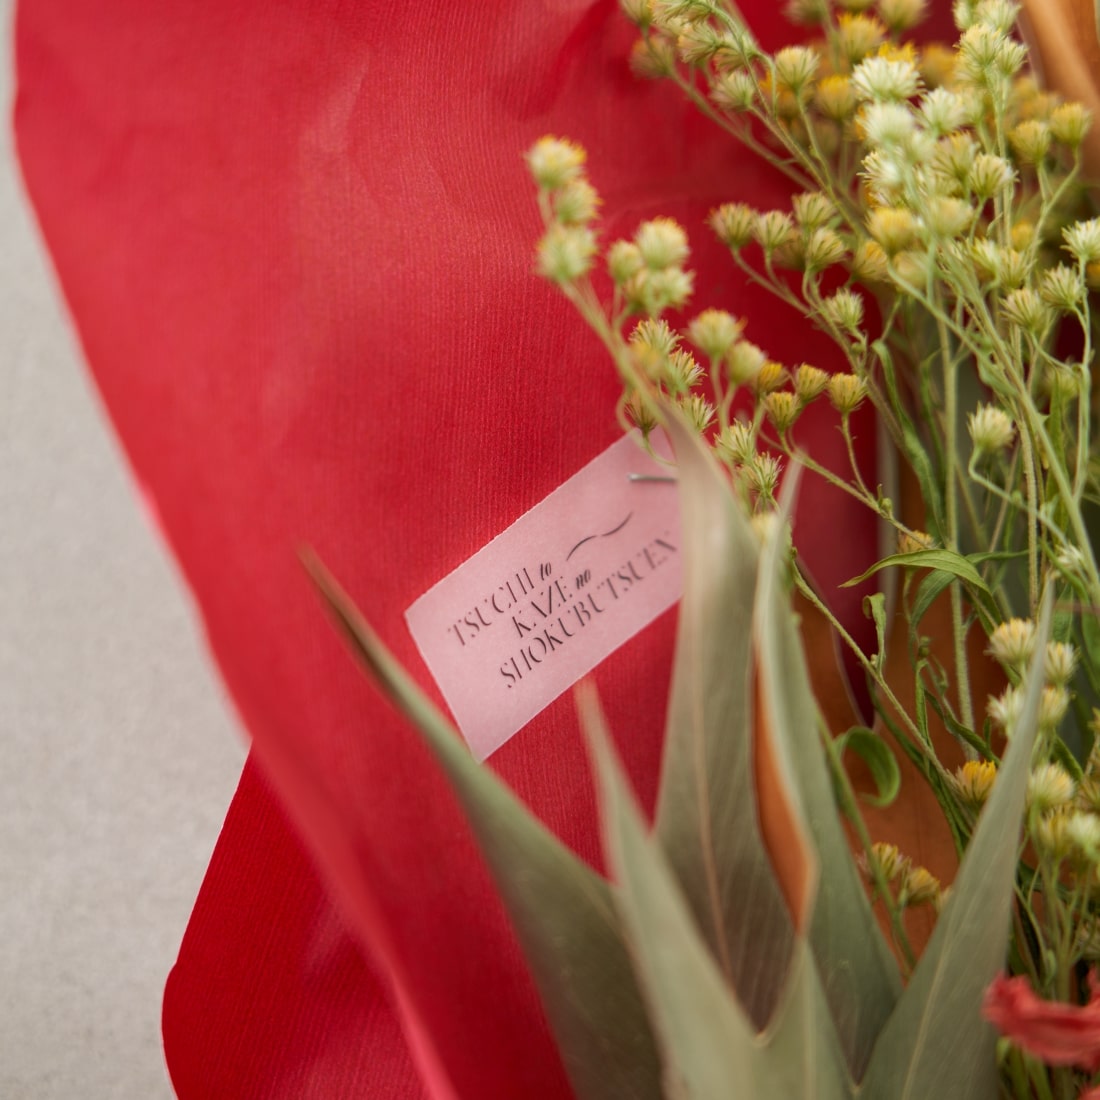 【母の日限定】＜MAGOKORO＞カーネーションの赤い花束［ラッピング付］